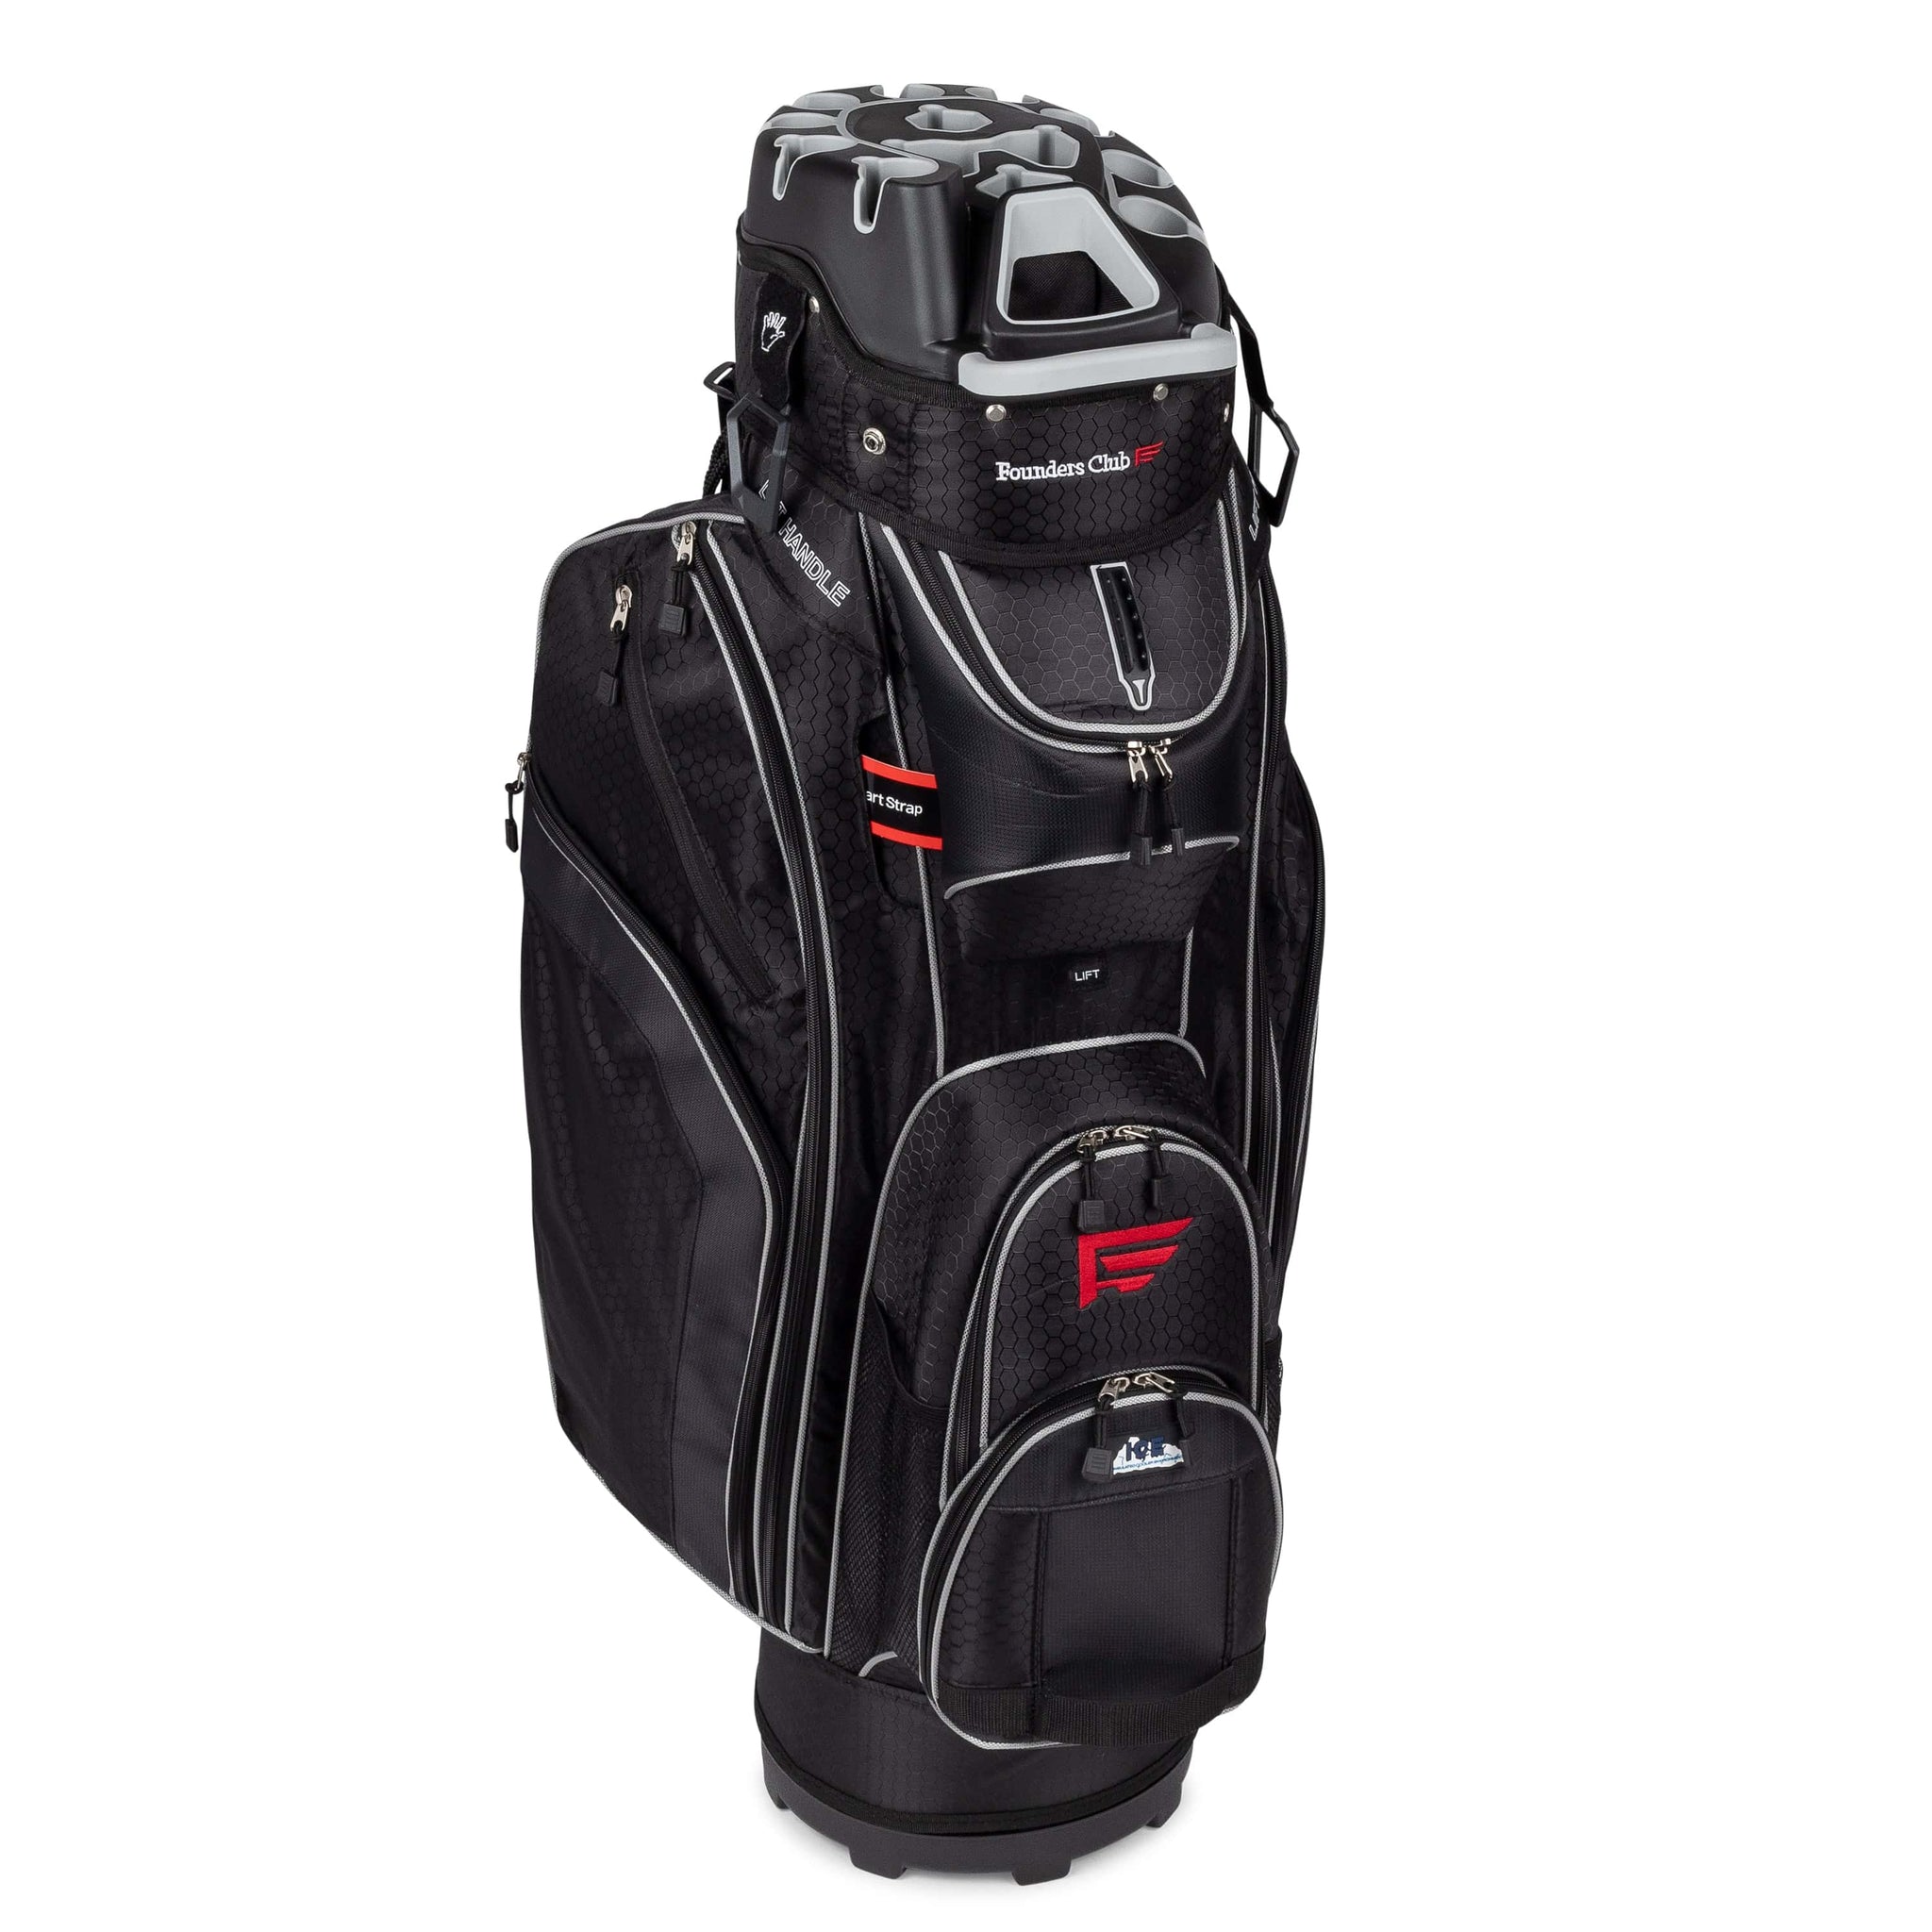 Founders Club 3rd Generation Premium Organizer 14 Way Golf Cart Bag -